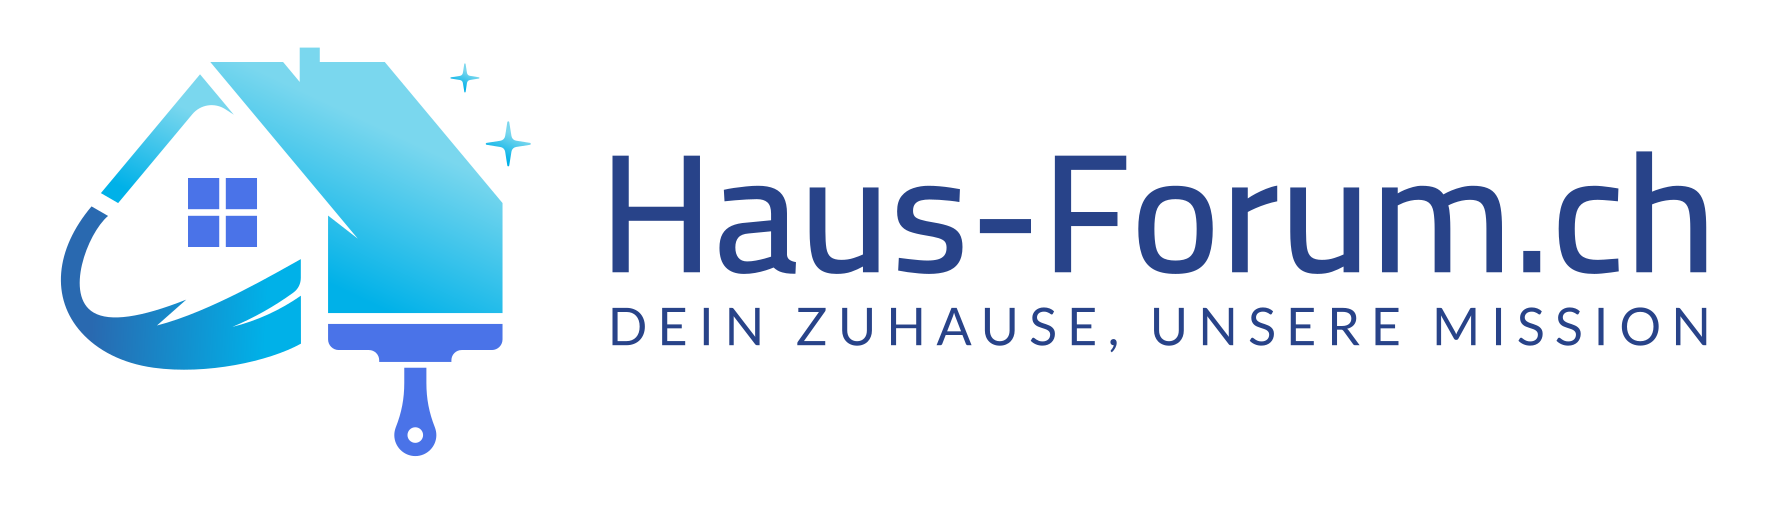 Haus-Forum.ch: Dein Expertenportal rund um Hausbau, Renovierung & Wohnen in der Schweiz